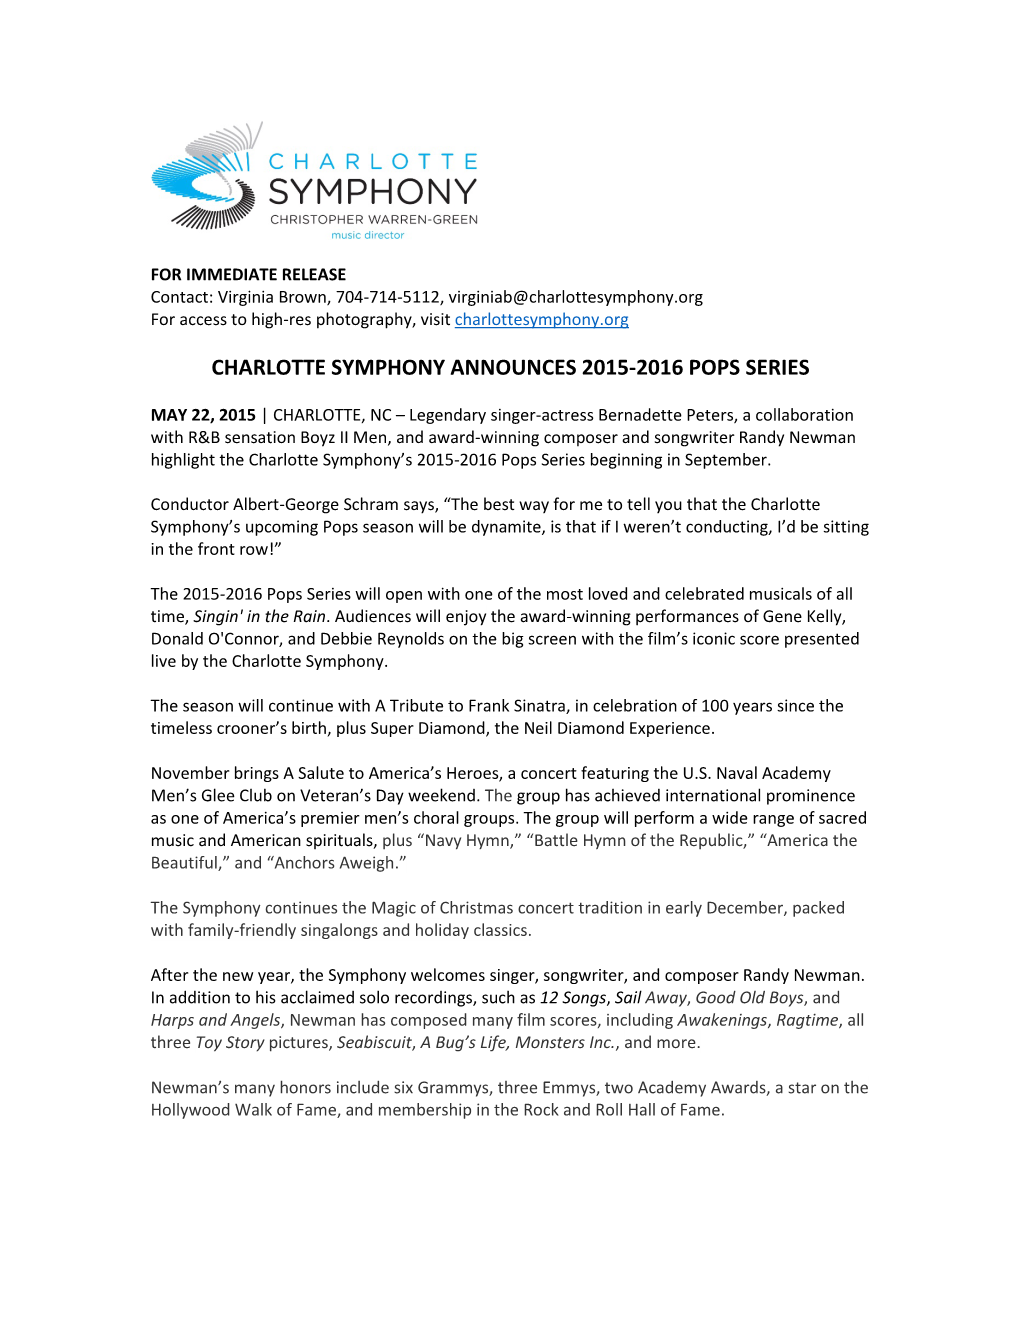 Charlotte Symphony Announces 2015-2016 Pops Series